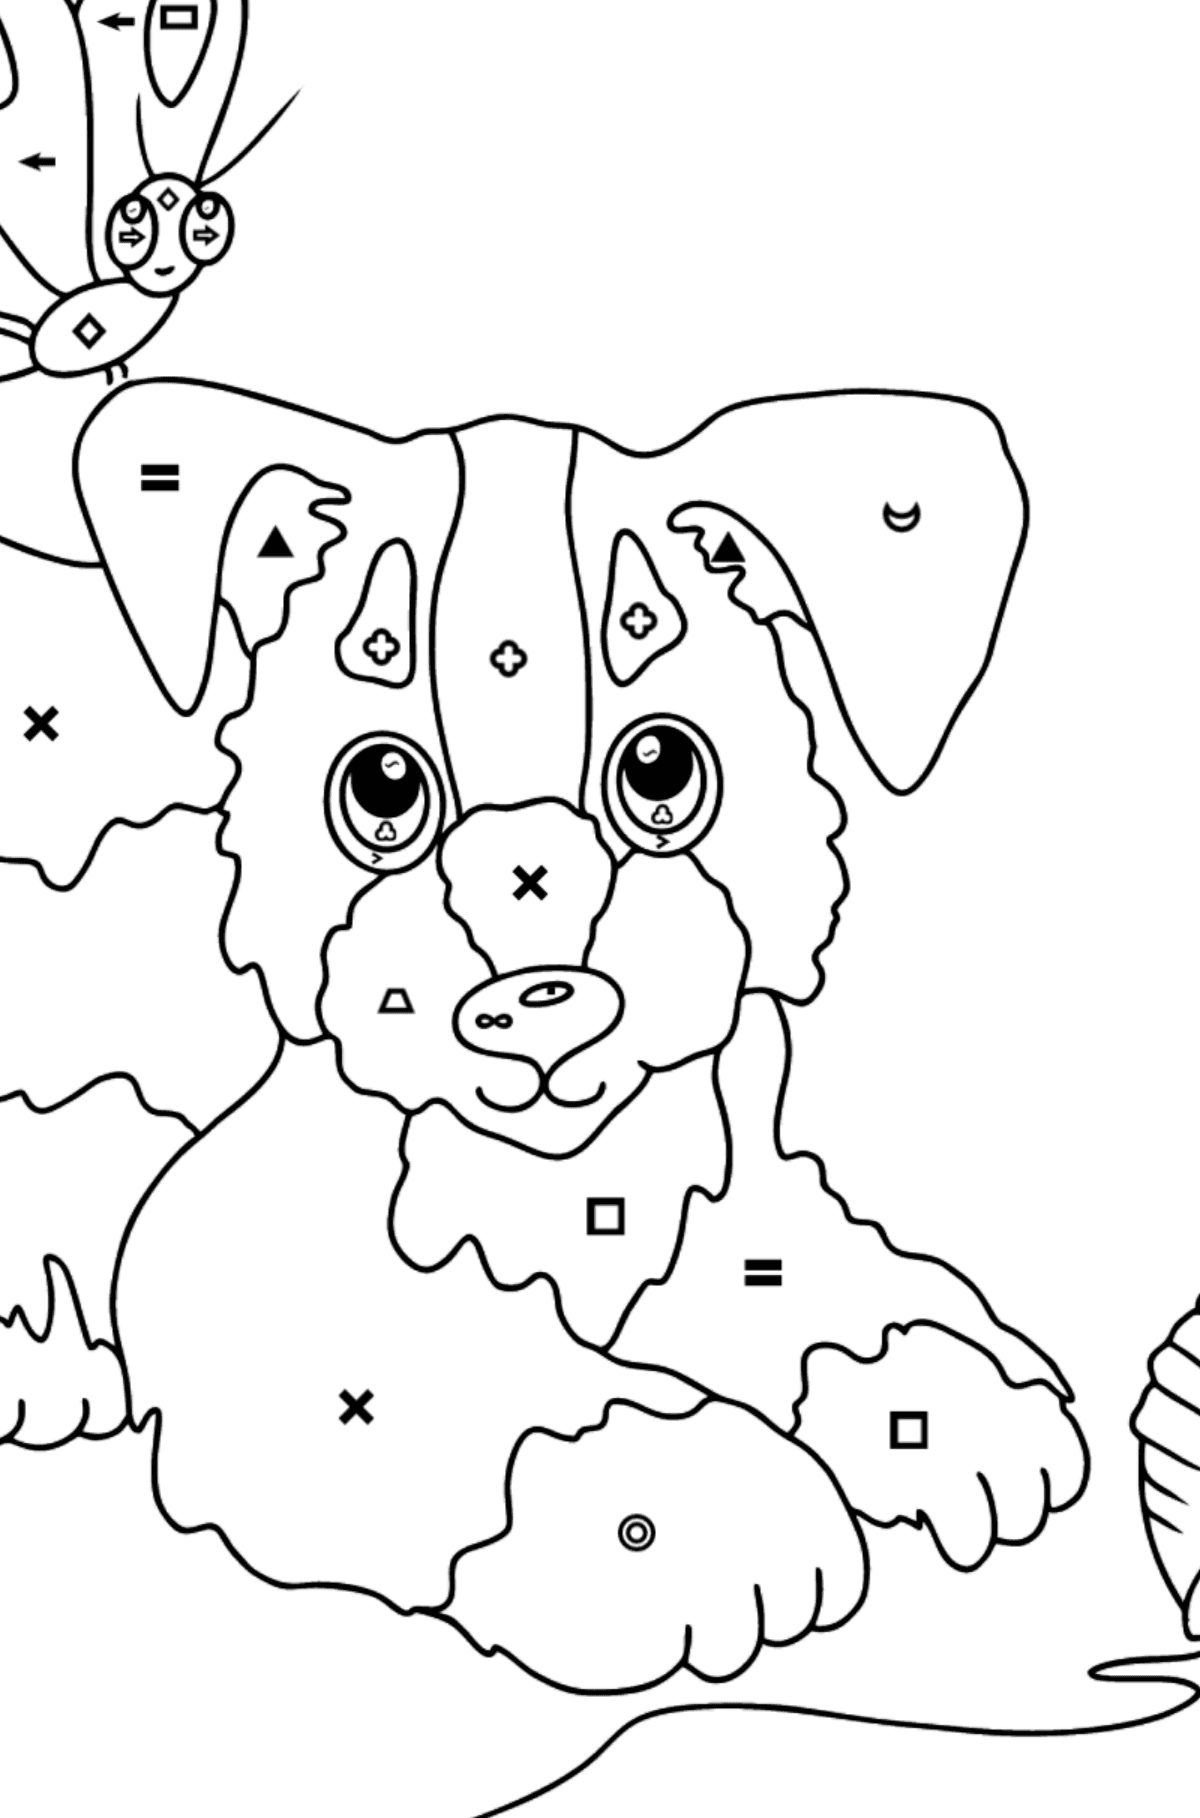 Dibujo para Colorear - Un Perro está Jugando con un Bola de Estambre y con Mariposas - Colorear por Símbolos para Niños